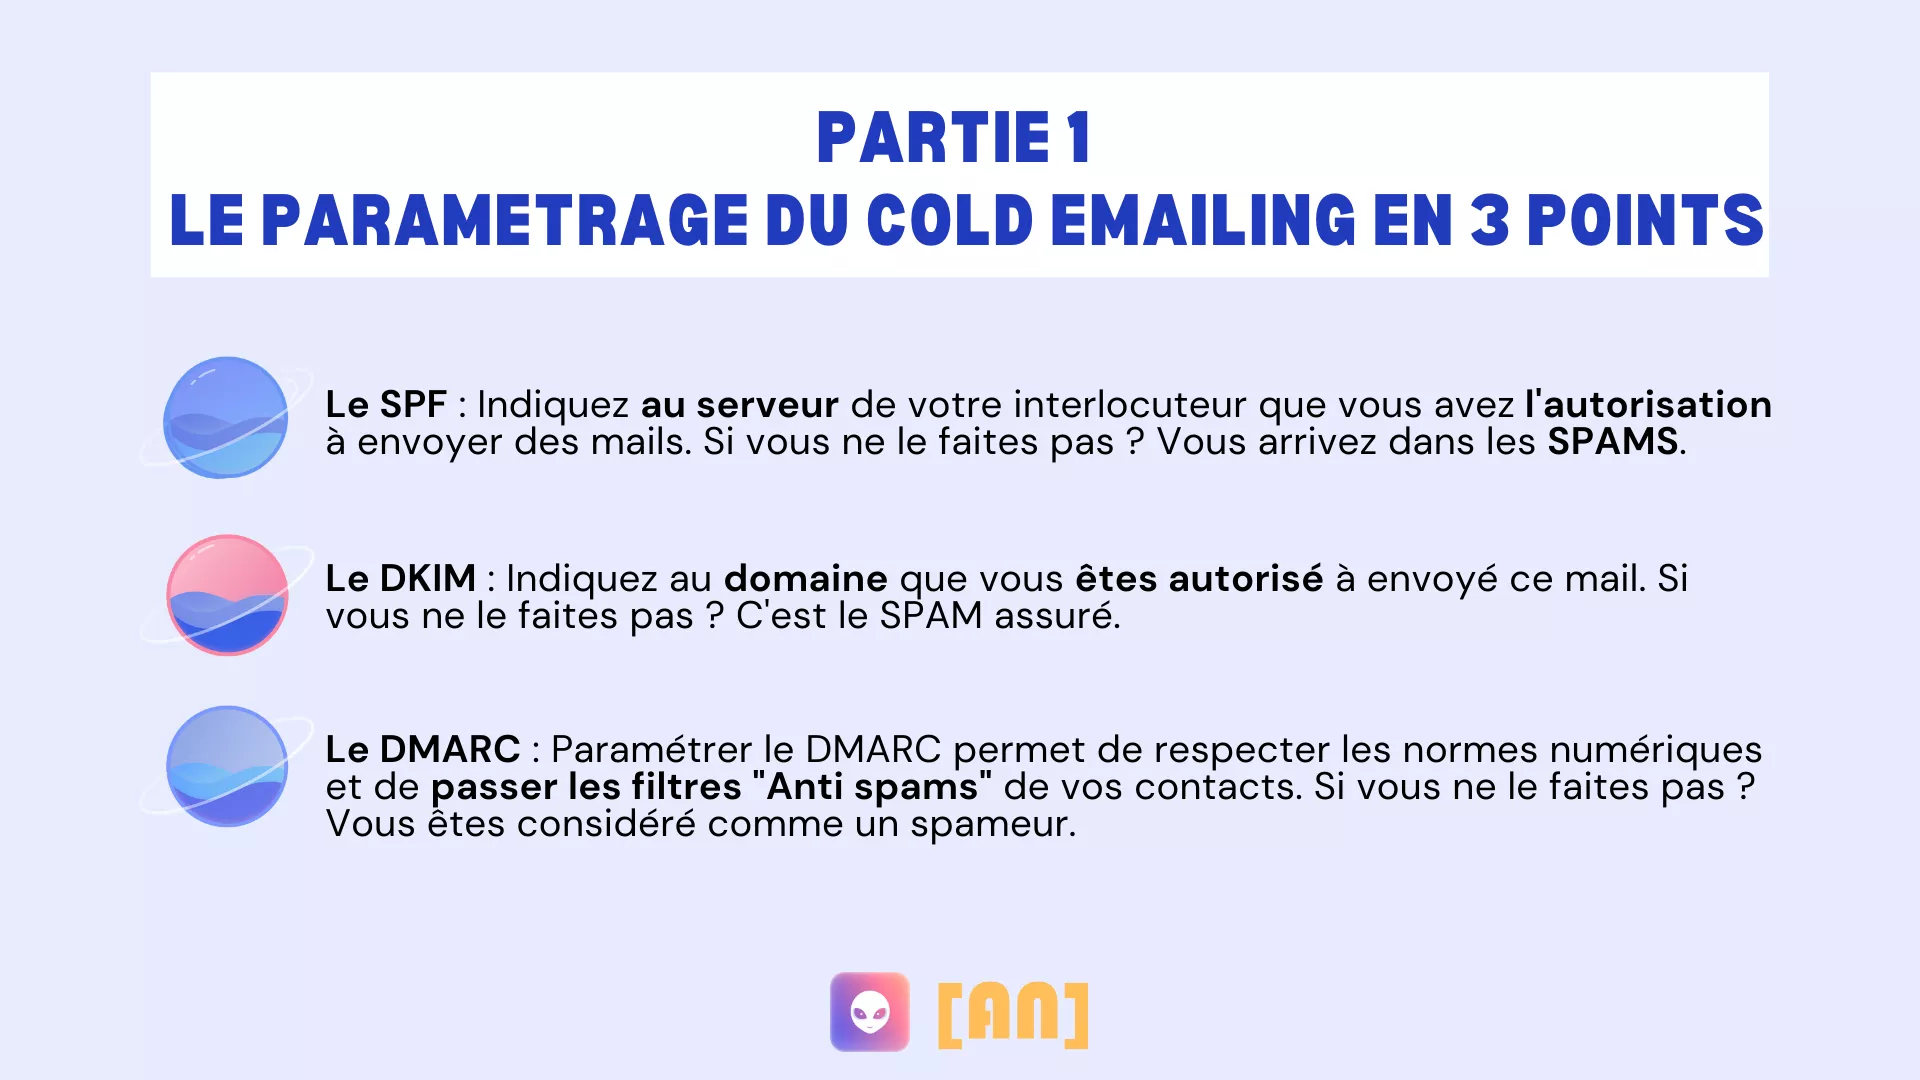 PARTIE-1-Le-parametrage-du-cold-emailing